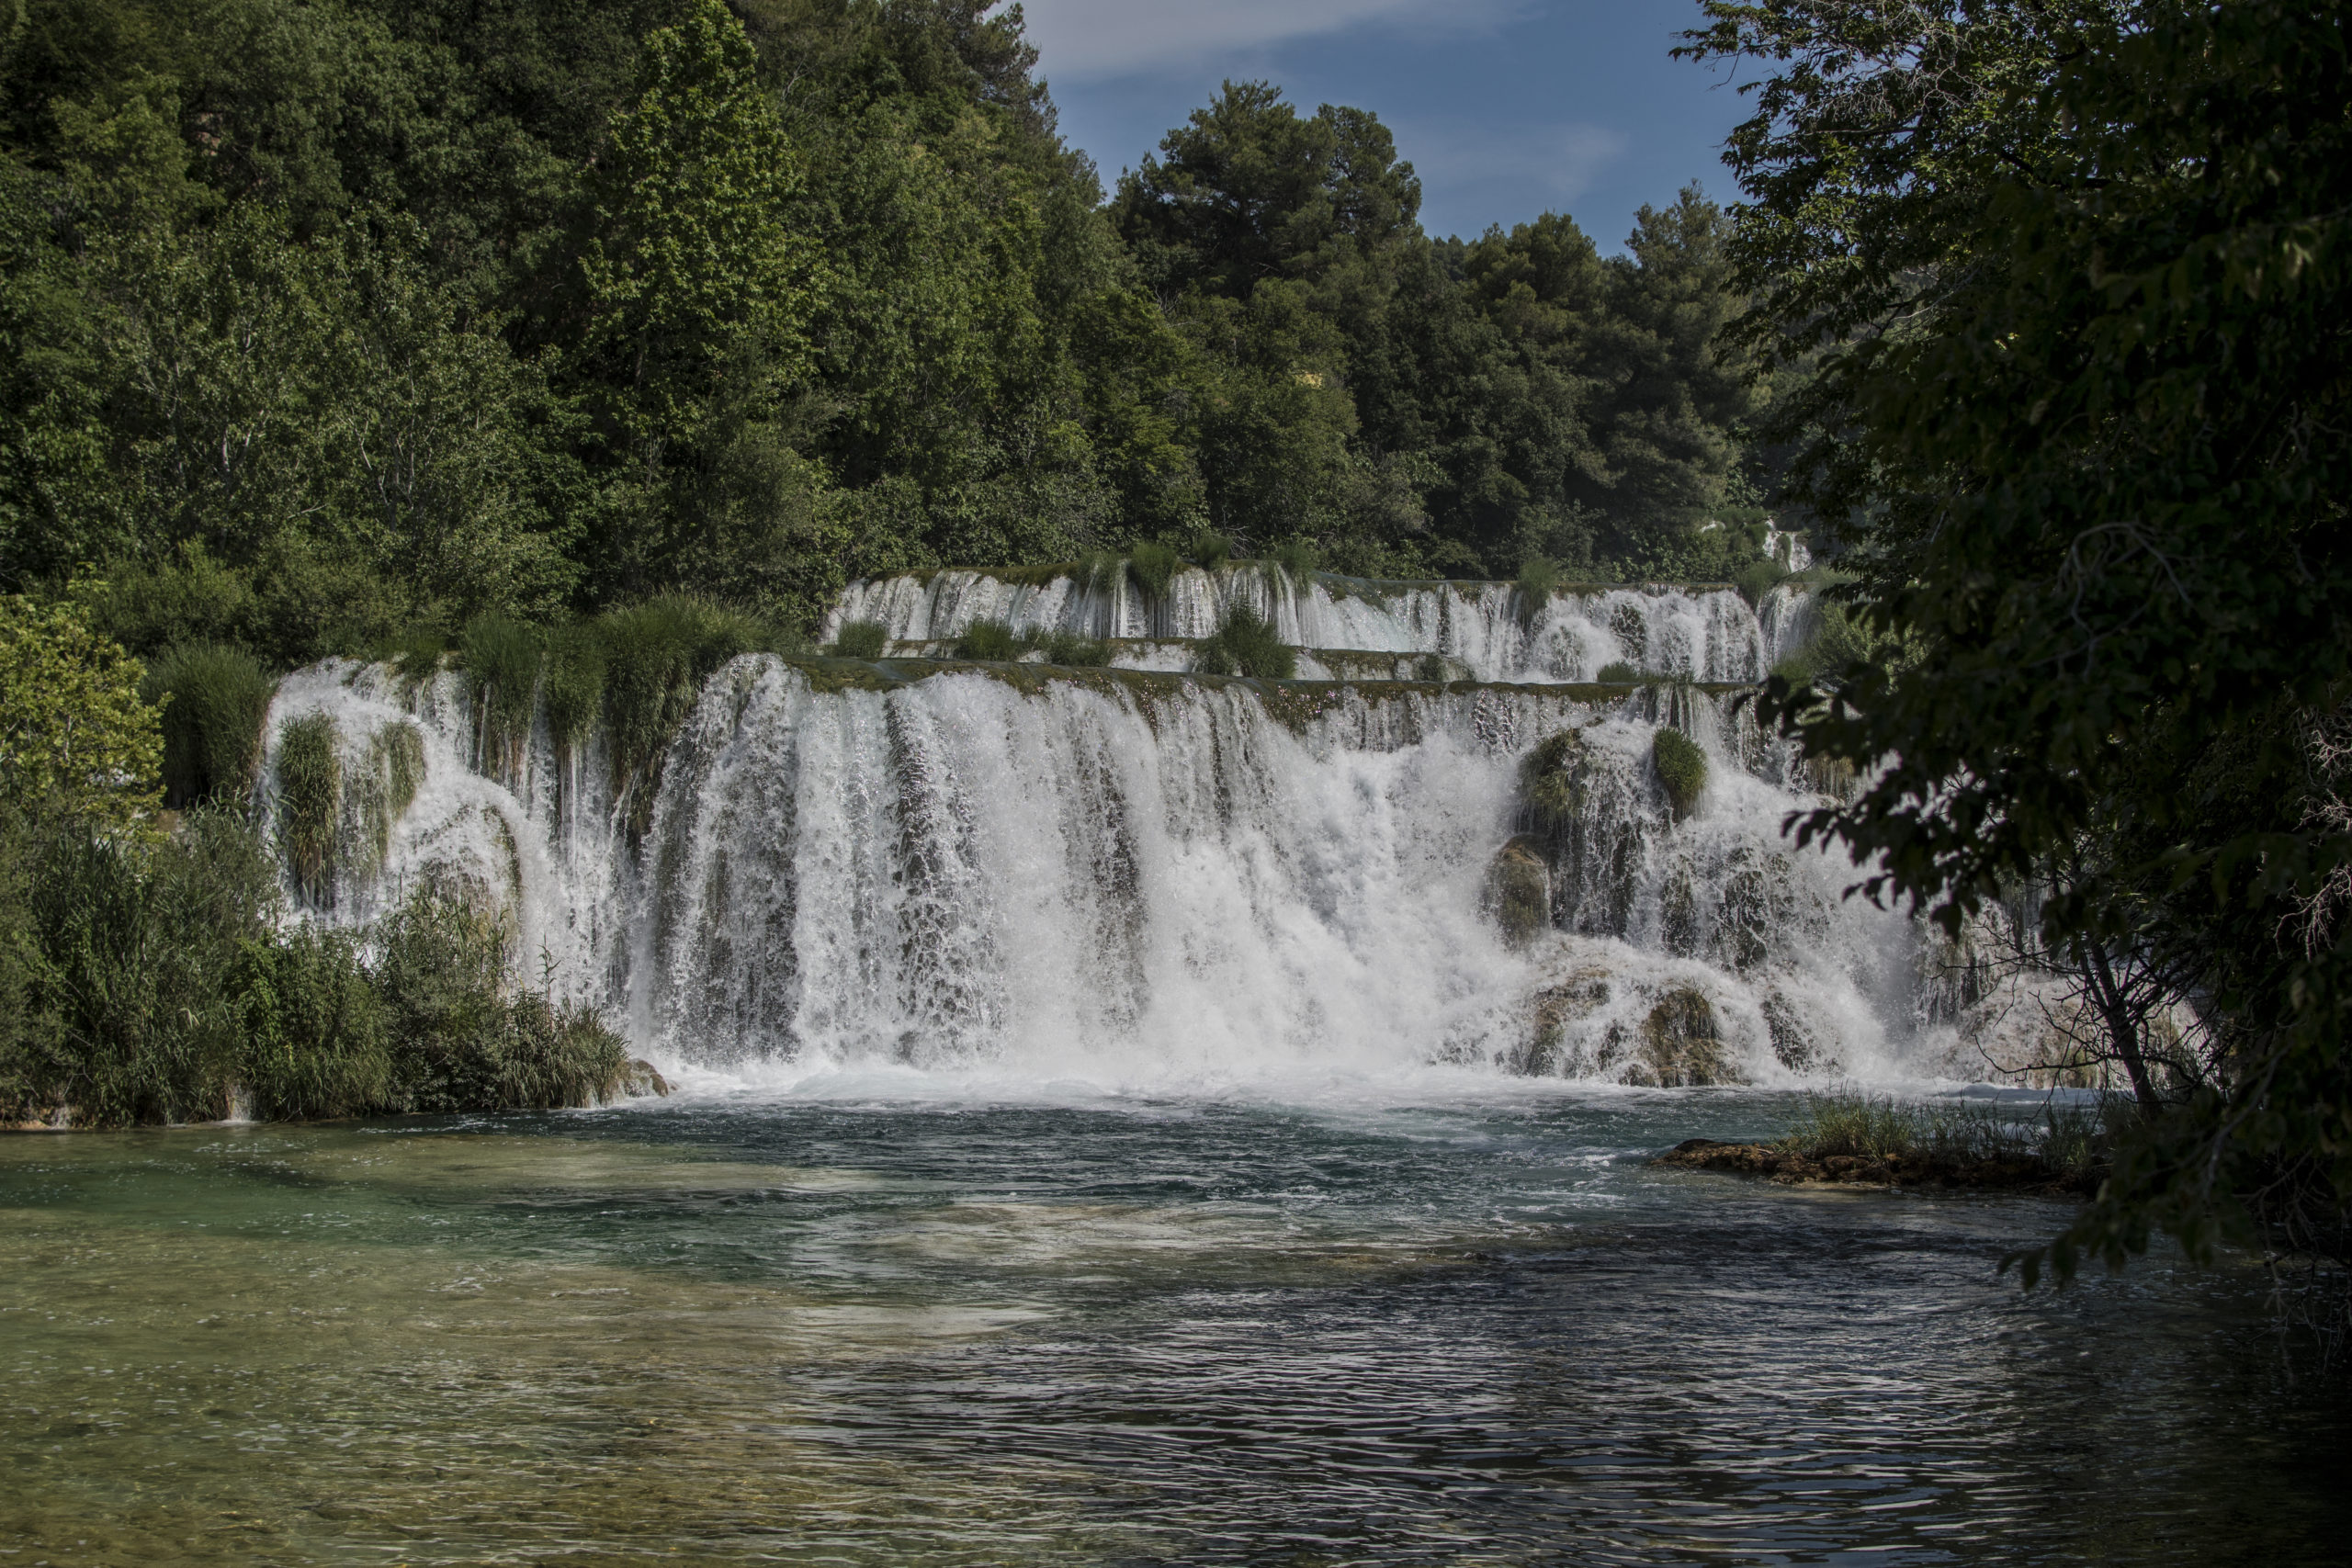 Croatie, voyages, nature, chutes naturelles, parc naturel, voyage de noces